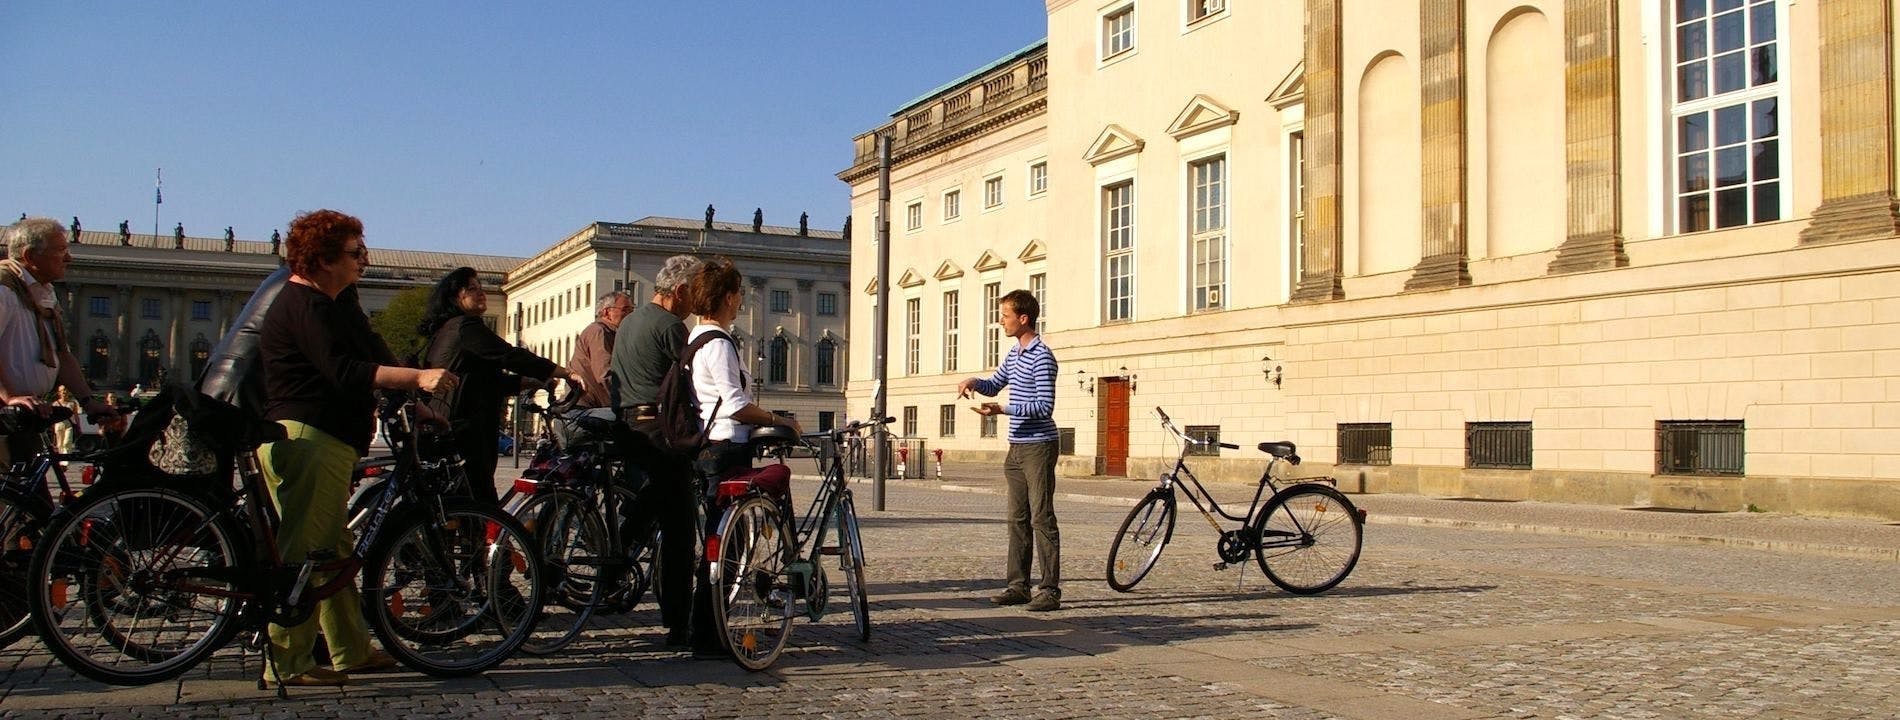 Excursão privada de bicicleta pelo melhor de Berlim